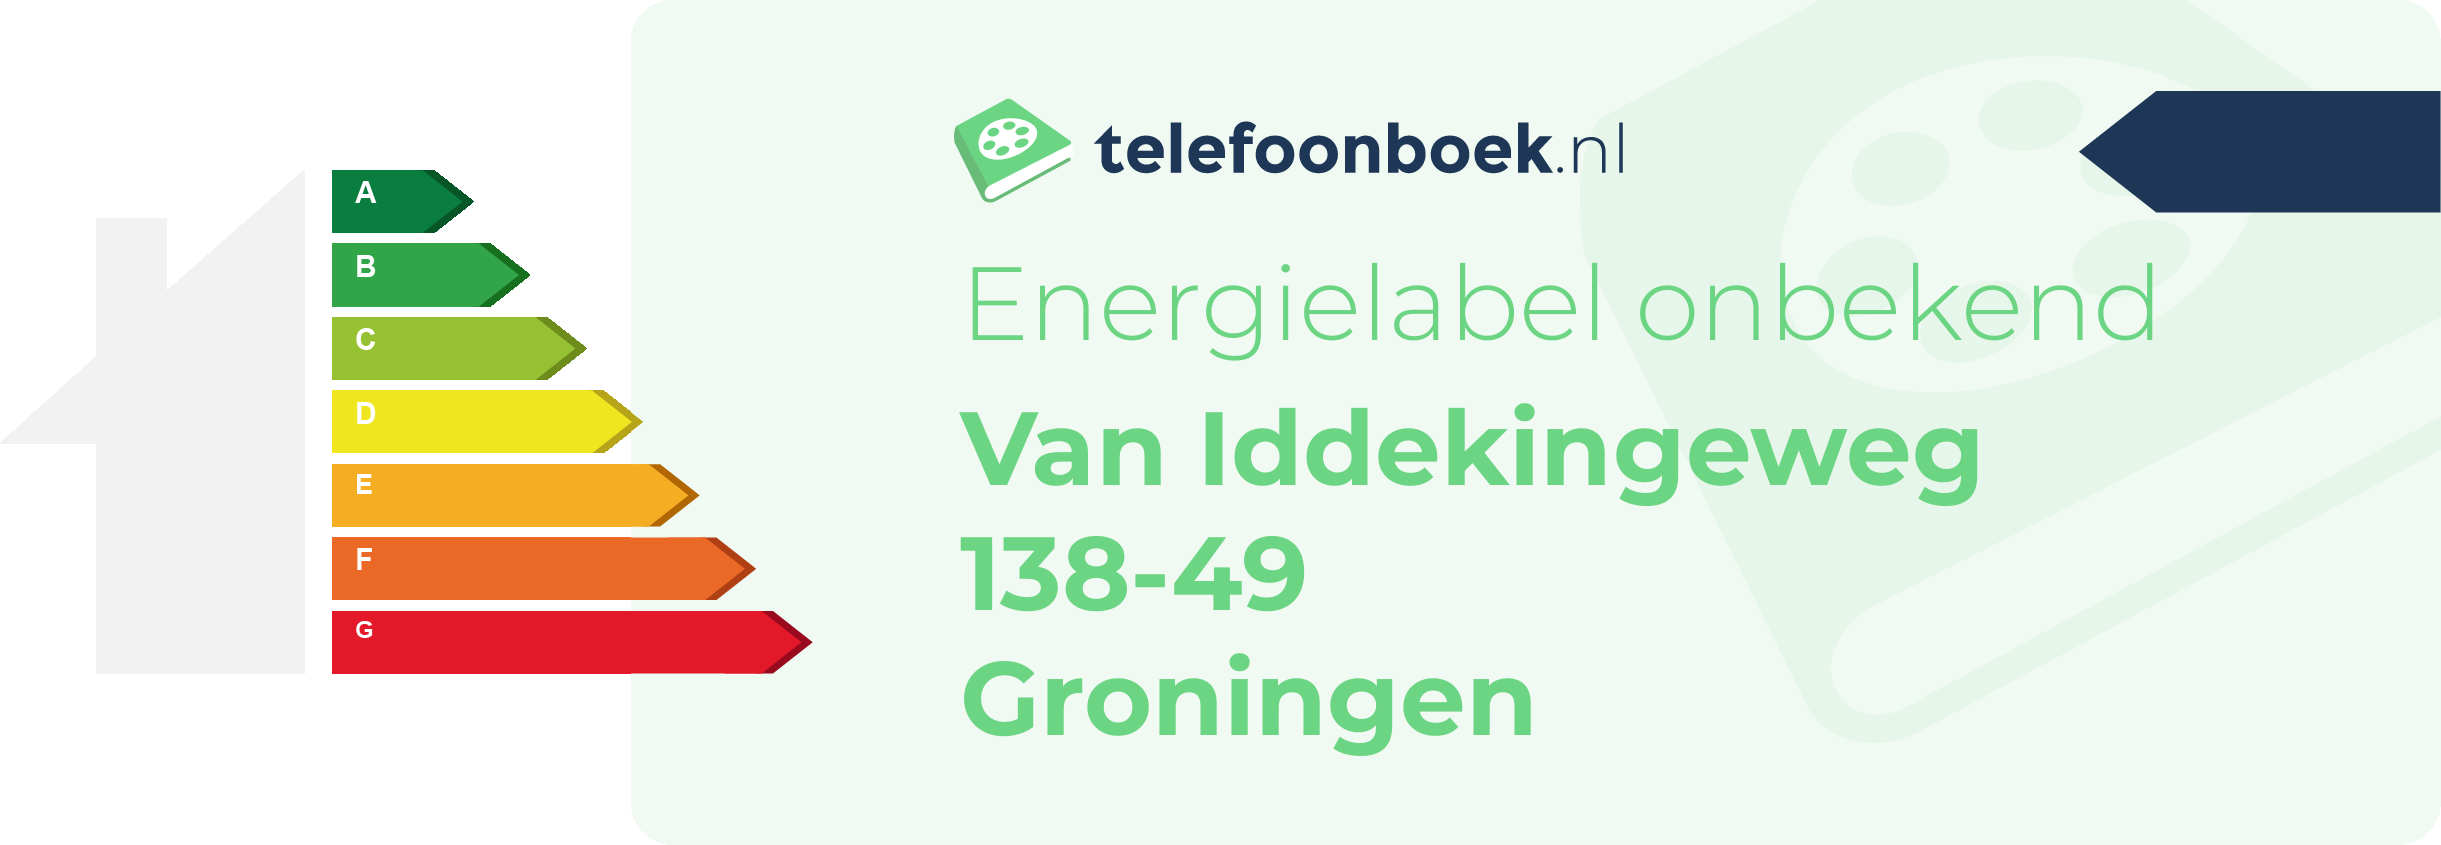 Energielabel Van Iddekingeweg 138-49 Groningen